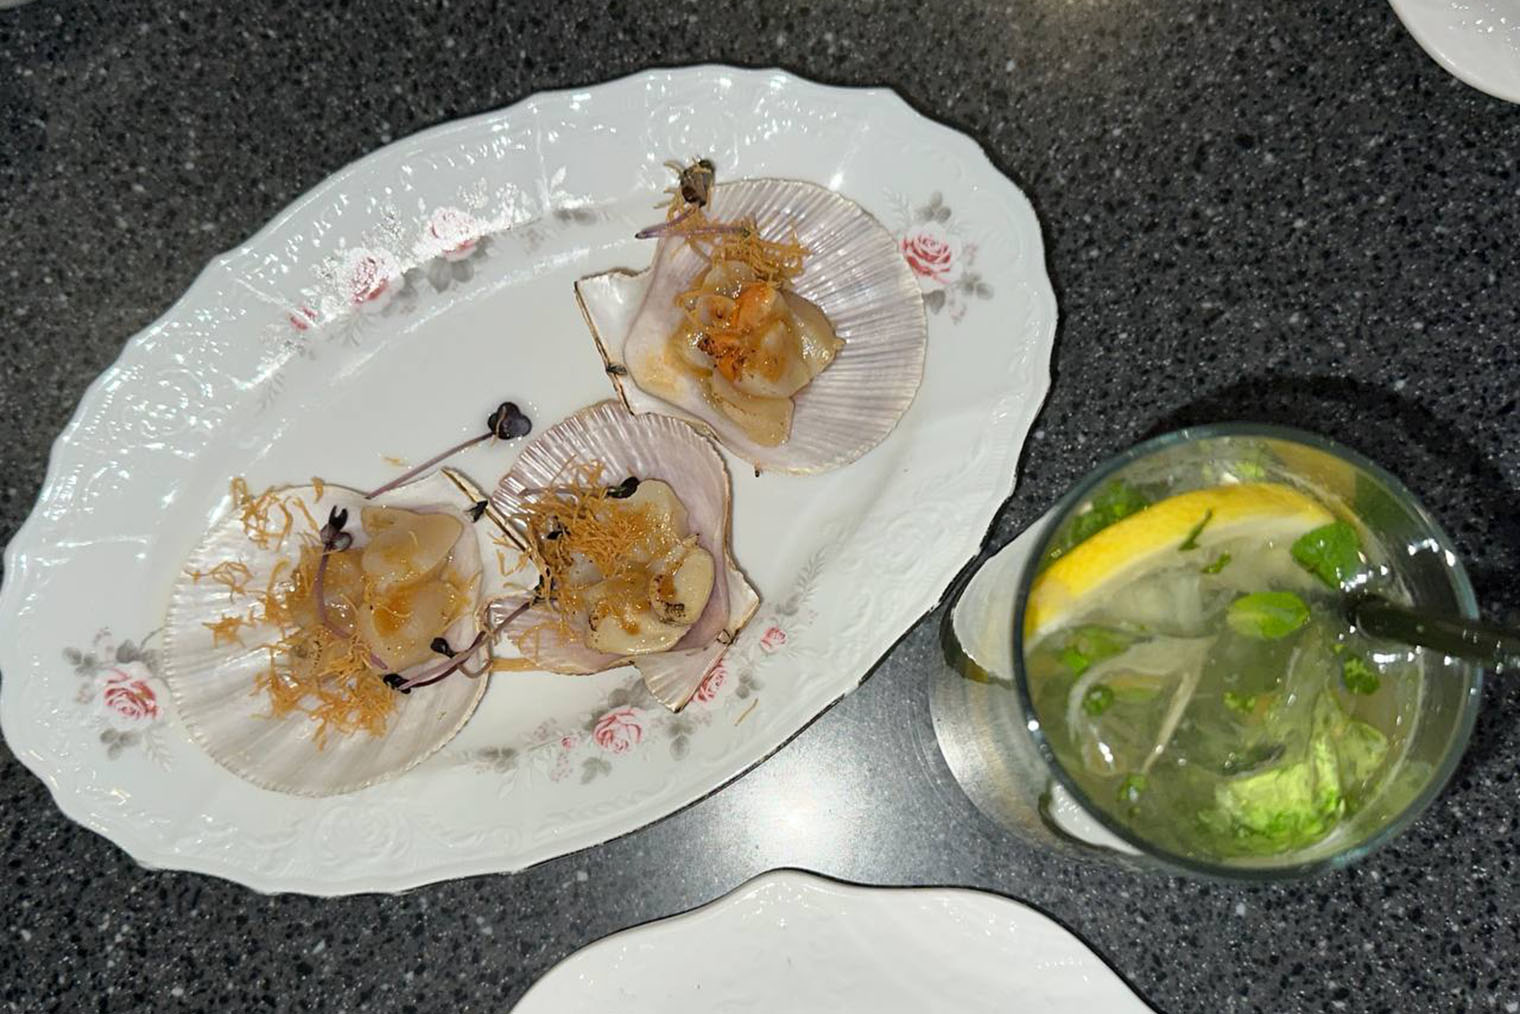 Посуда и подача в «Честной рыбе» красивые. Счет за ужин — 1570 ₽ за три блюда и напиток